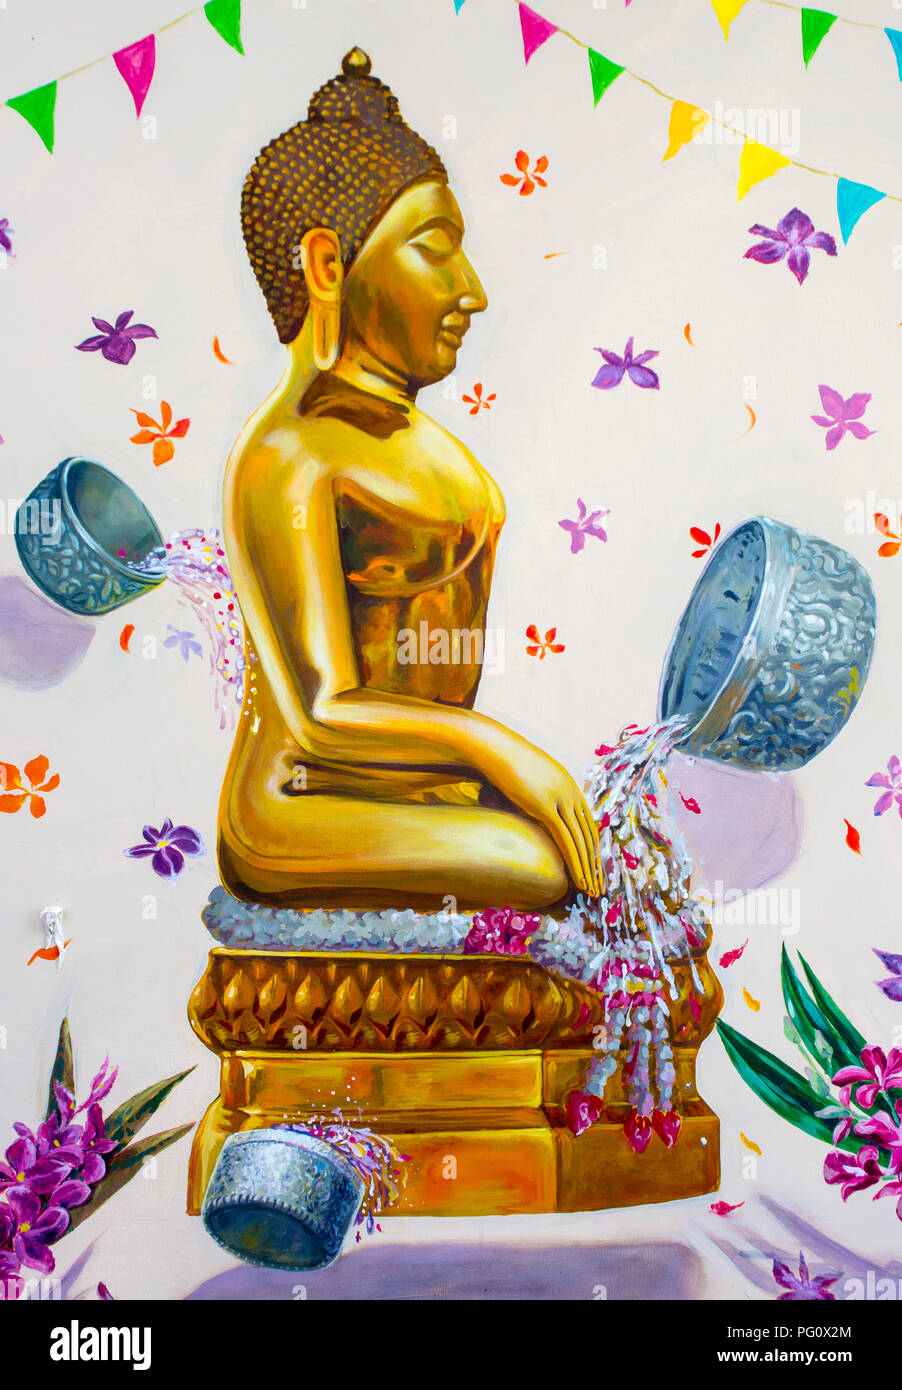 Songkran Artwork Bangkok Thailand 2 Stock Photo